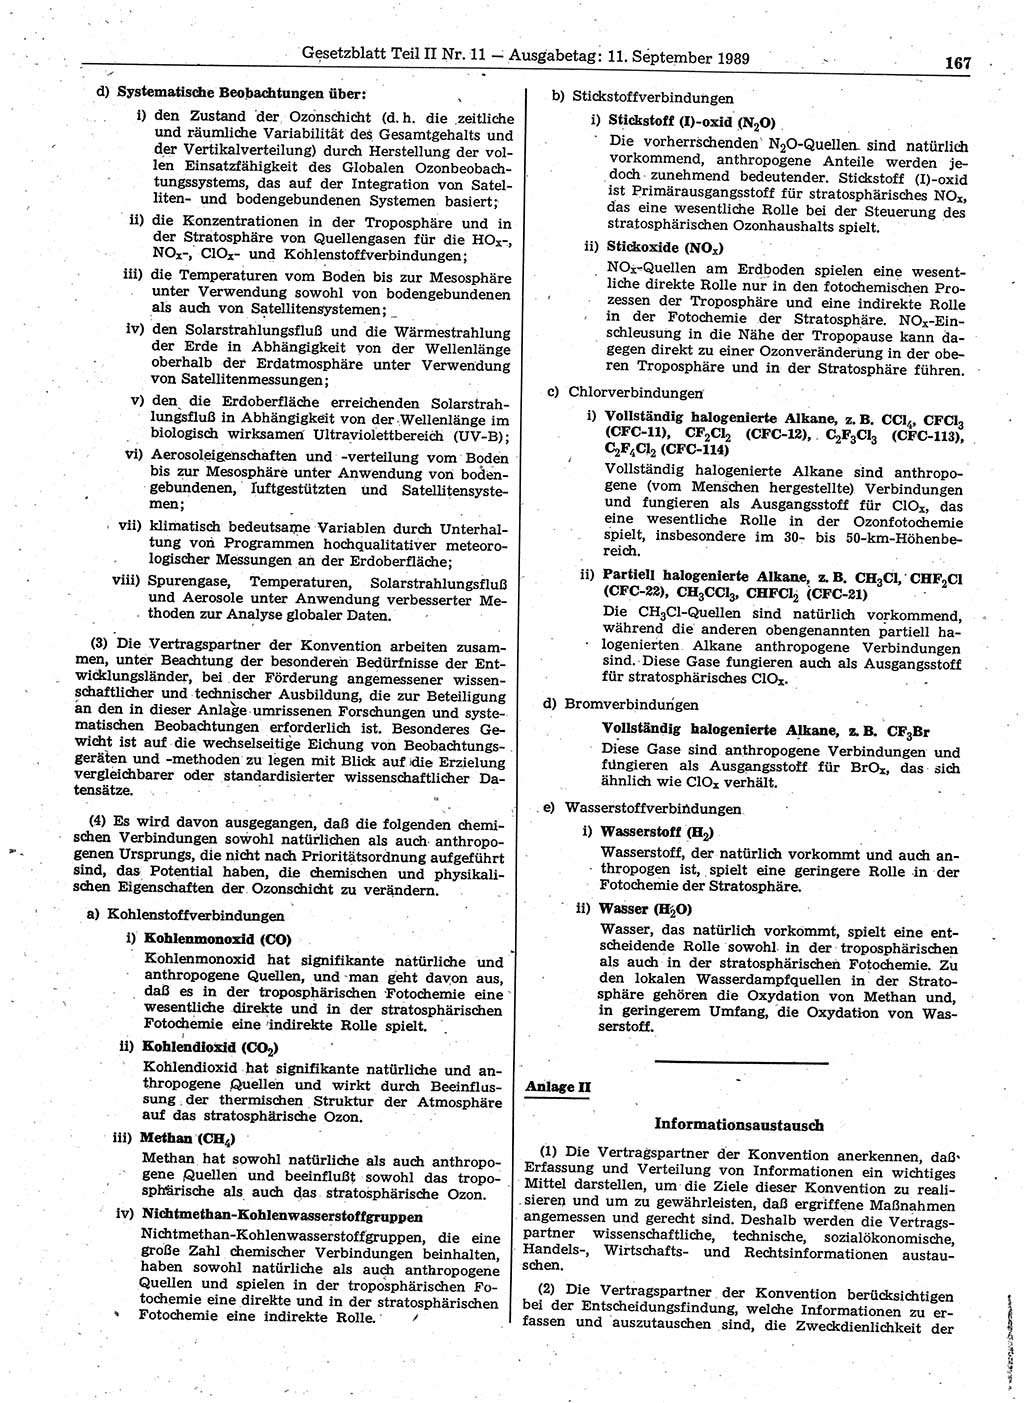 Gesetzblatt (GBl.) der Deutschen Demokratischen Republik (DDR) Teil ⅠⅠ 1989, Seite 167 (GBl. DDR ⅠⅠ 1989, S. 167)